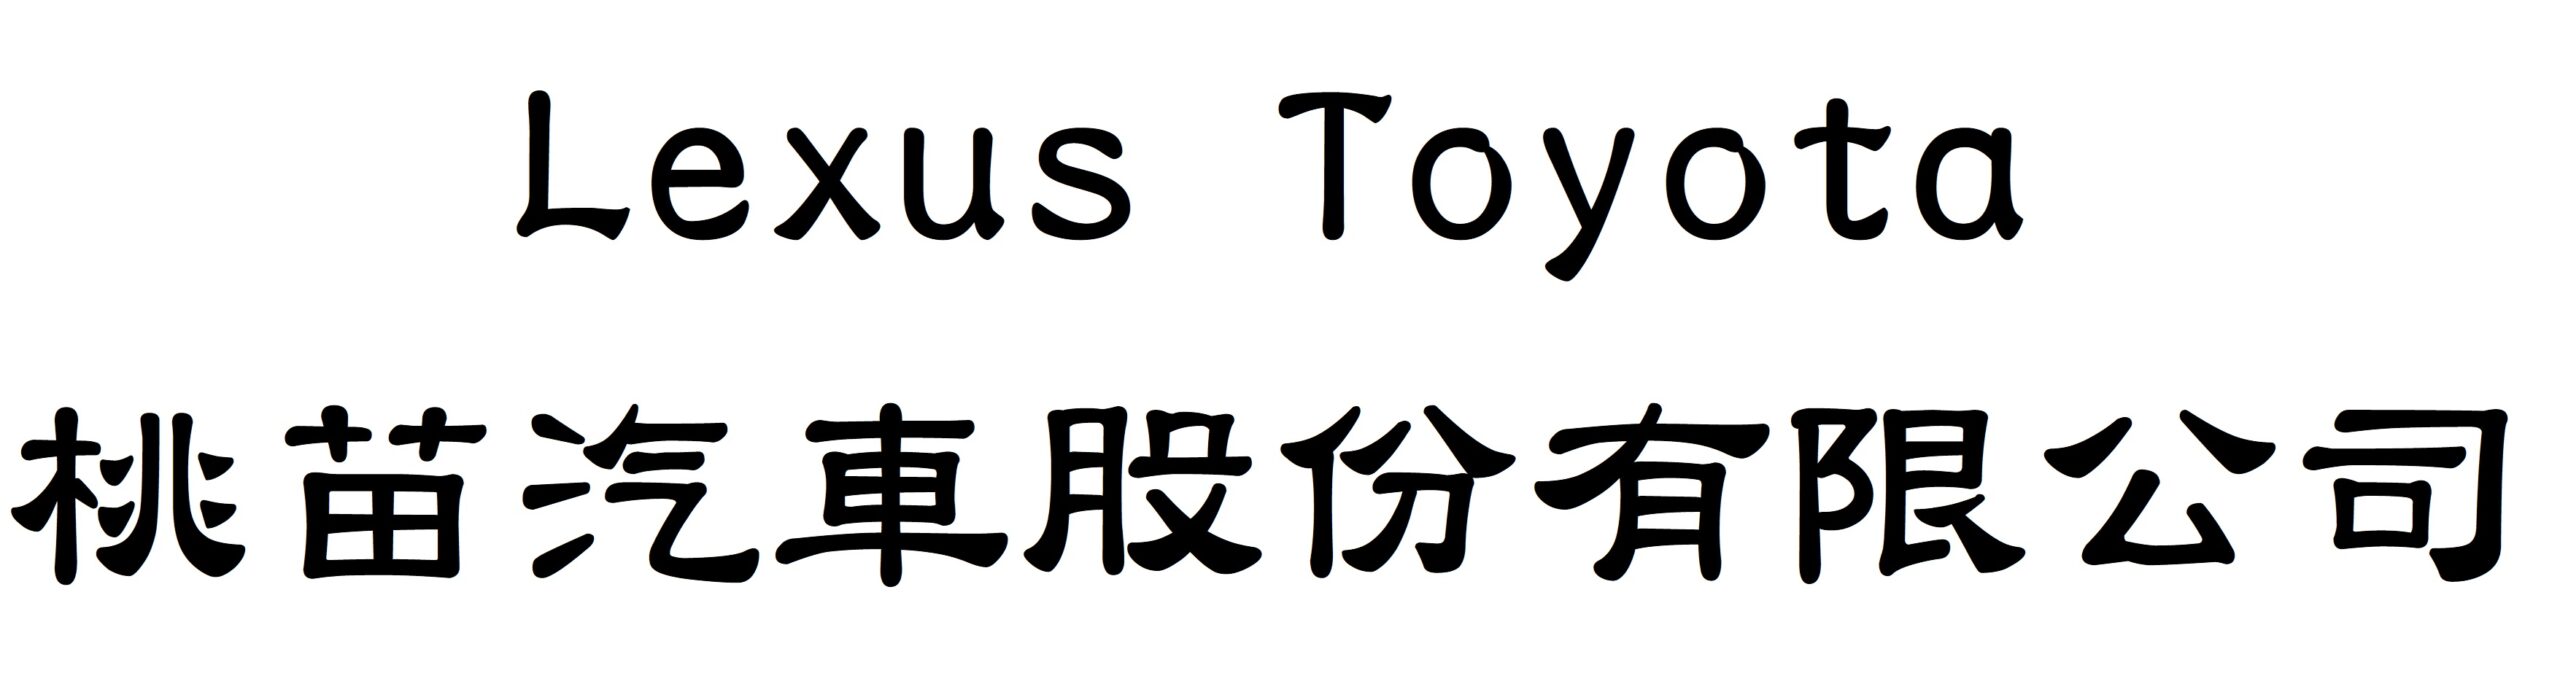 Lexus Toyota